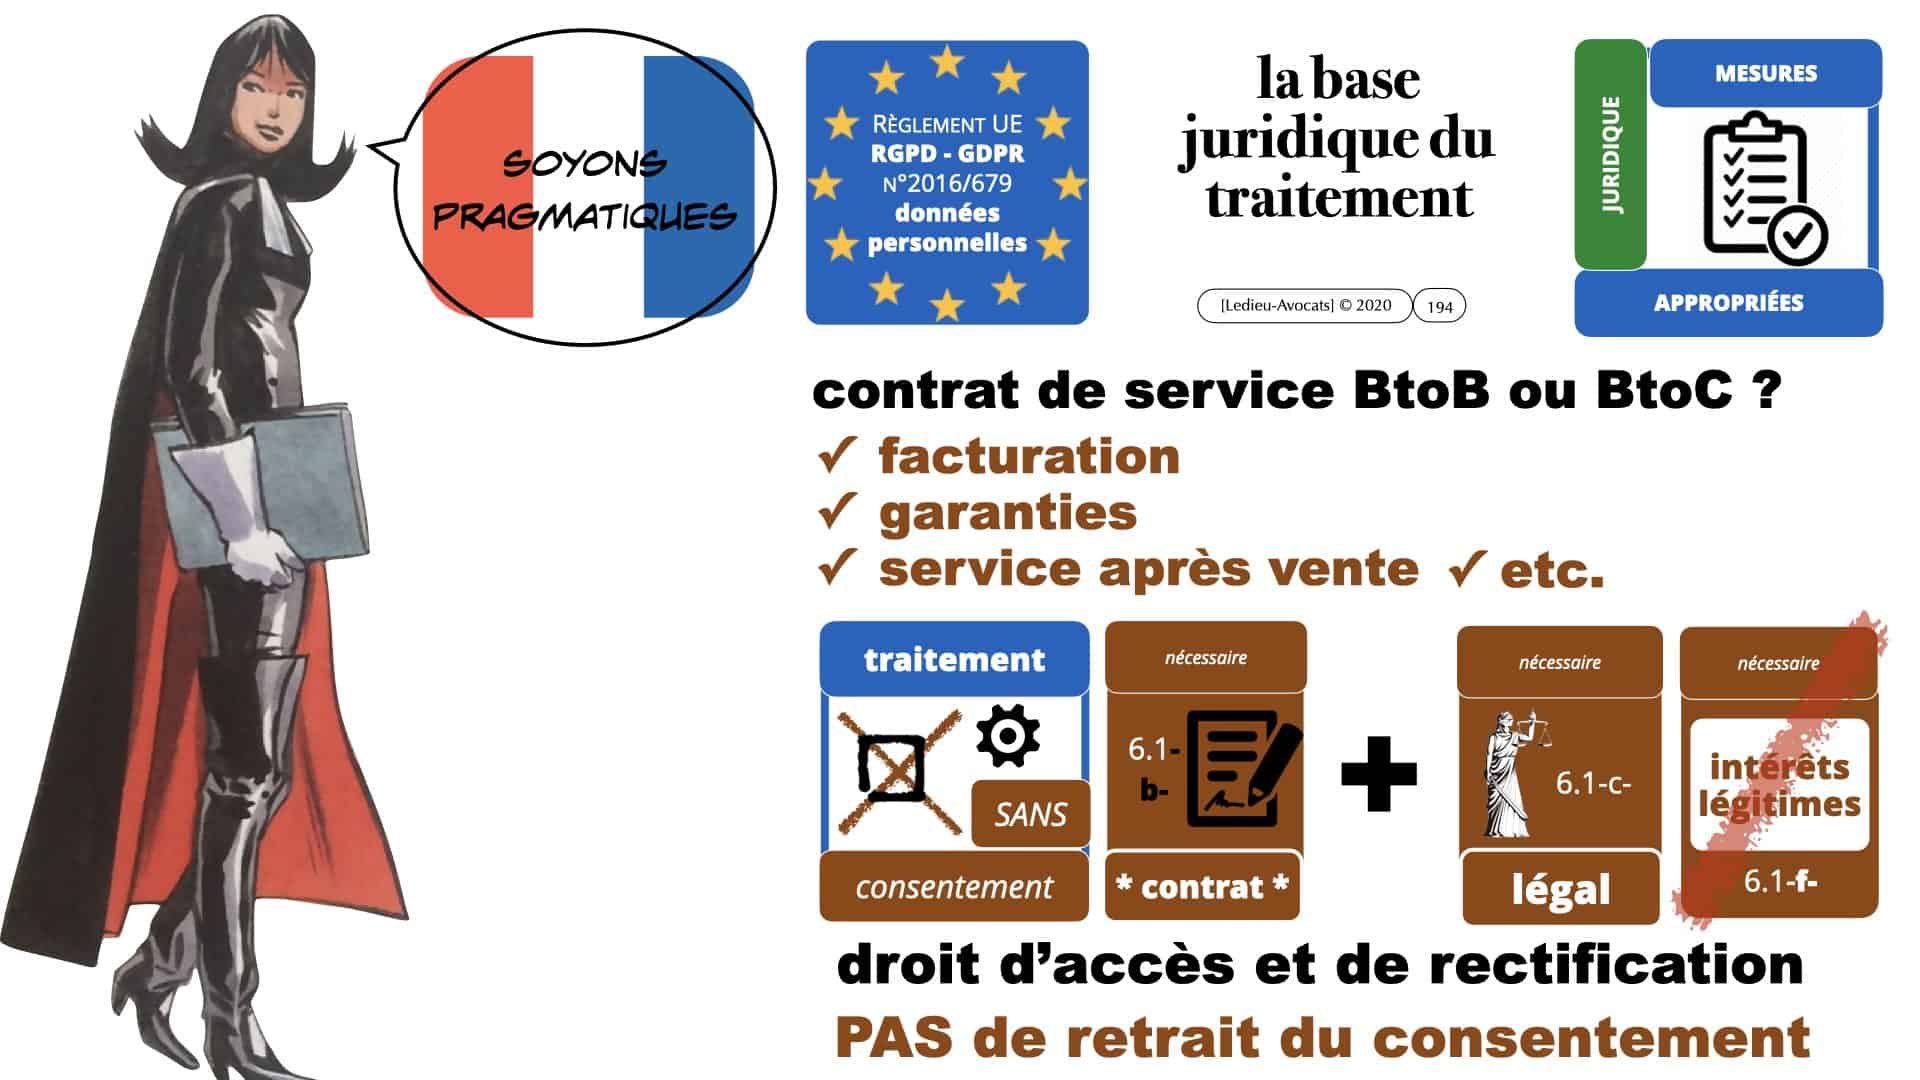 RGPD e-Privacy données personnelles jurisprudence formation Lamy Les Echos 10-02-2021 ©Ledieu-Avocats.194